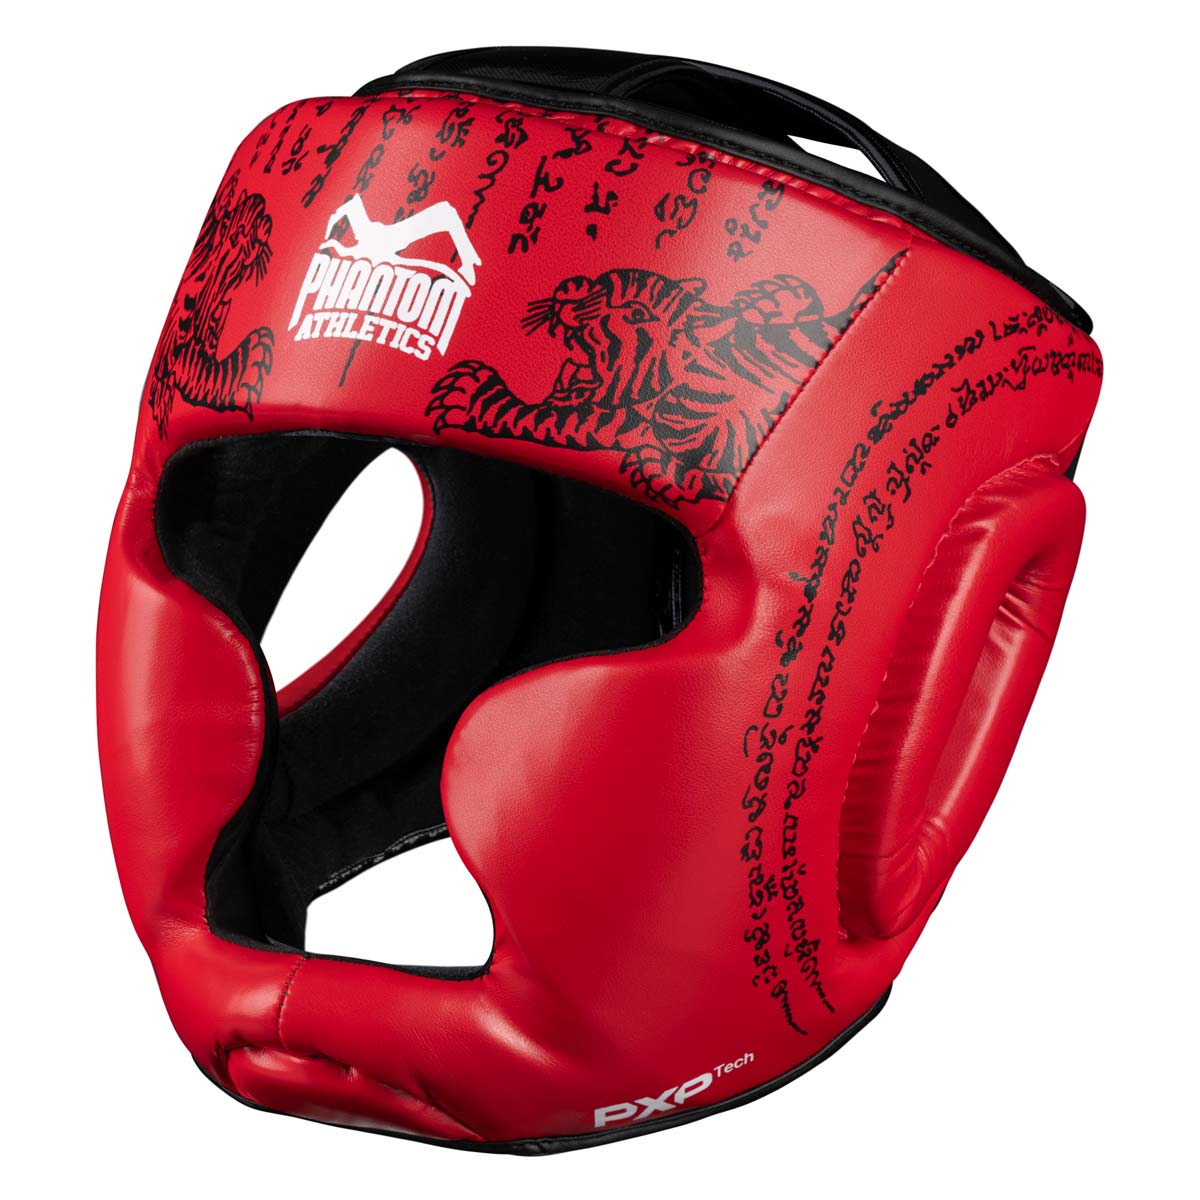 Phantom Муаи Тхаи заштита за главу за тајландски бокс и ММА спаринге, такмичења и тренинге. У традиционалном Сак Иант дизајну и црвеној боји.